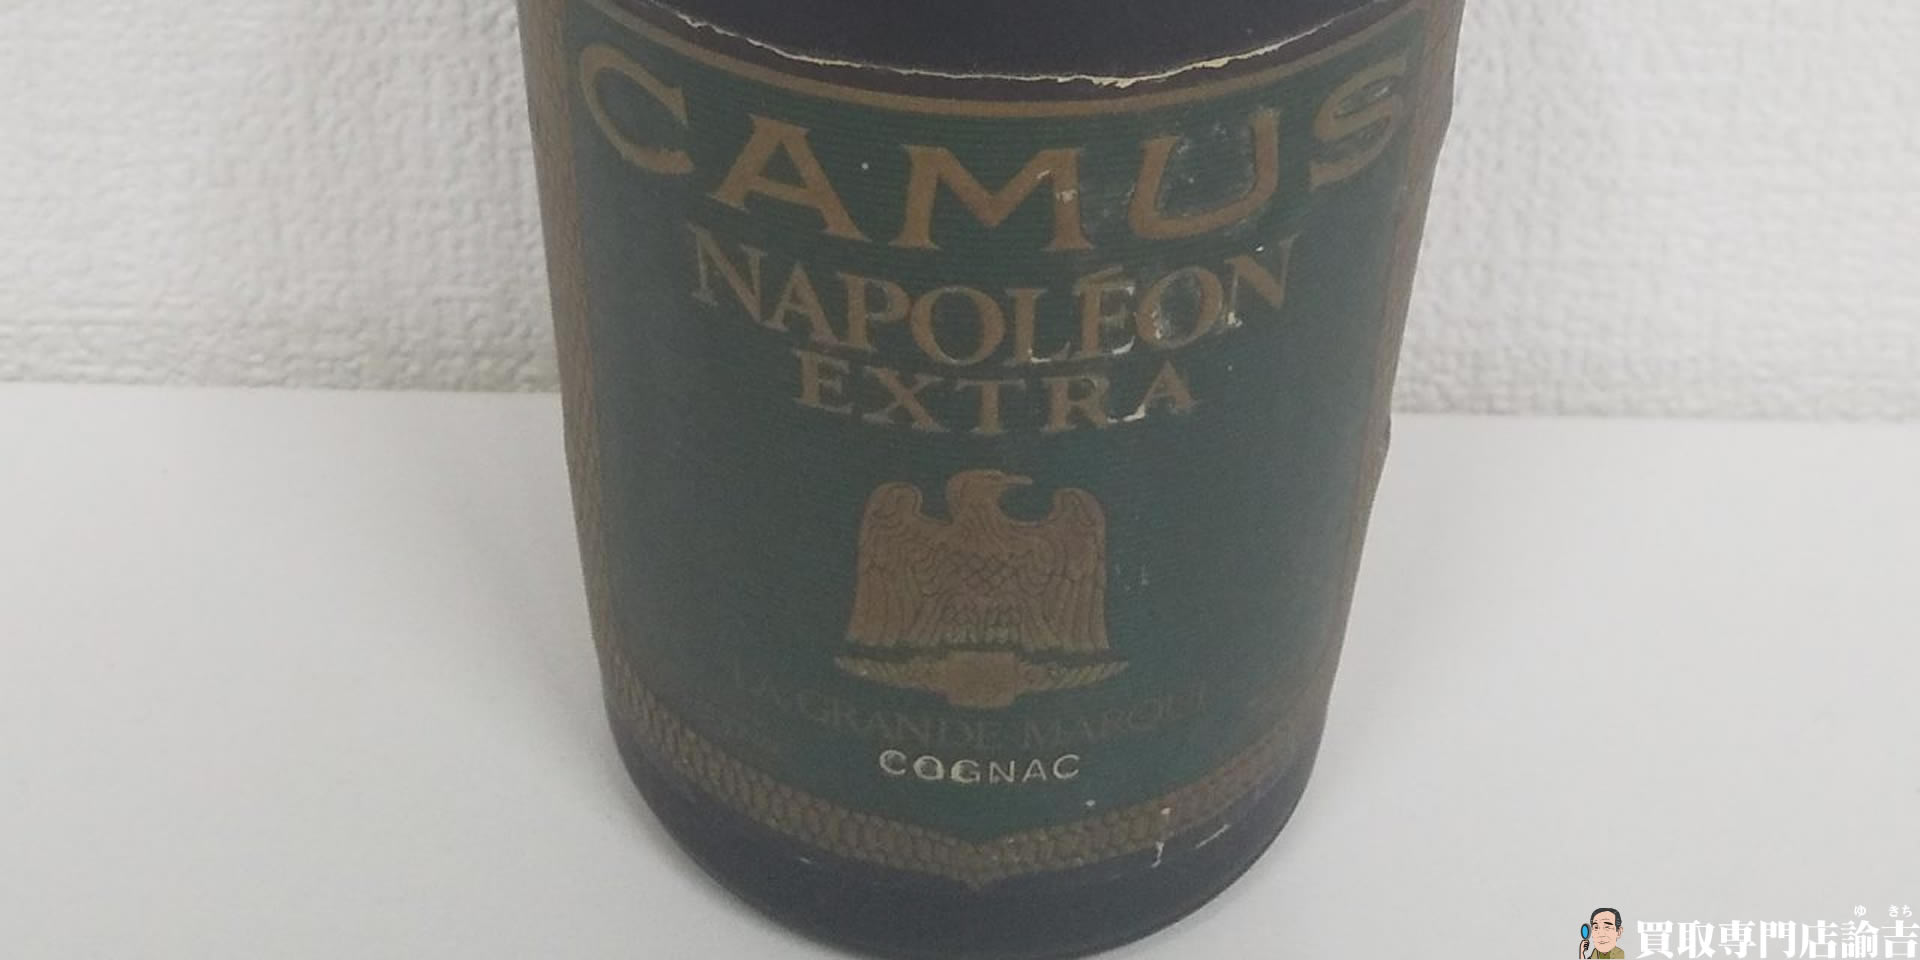 CAMUS NAPOLEON EXTRA 700ml 40%